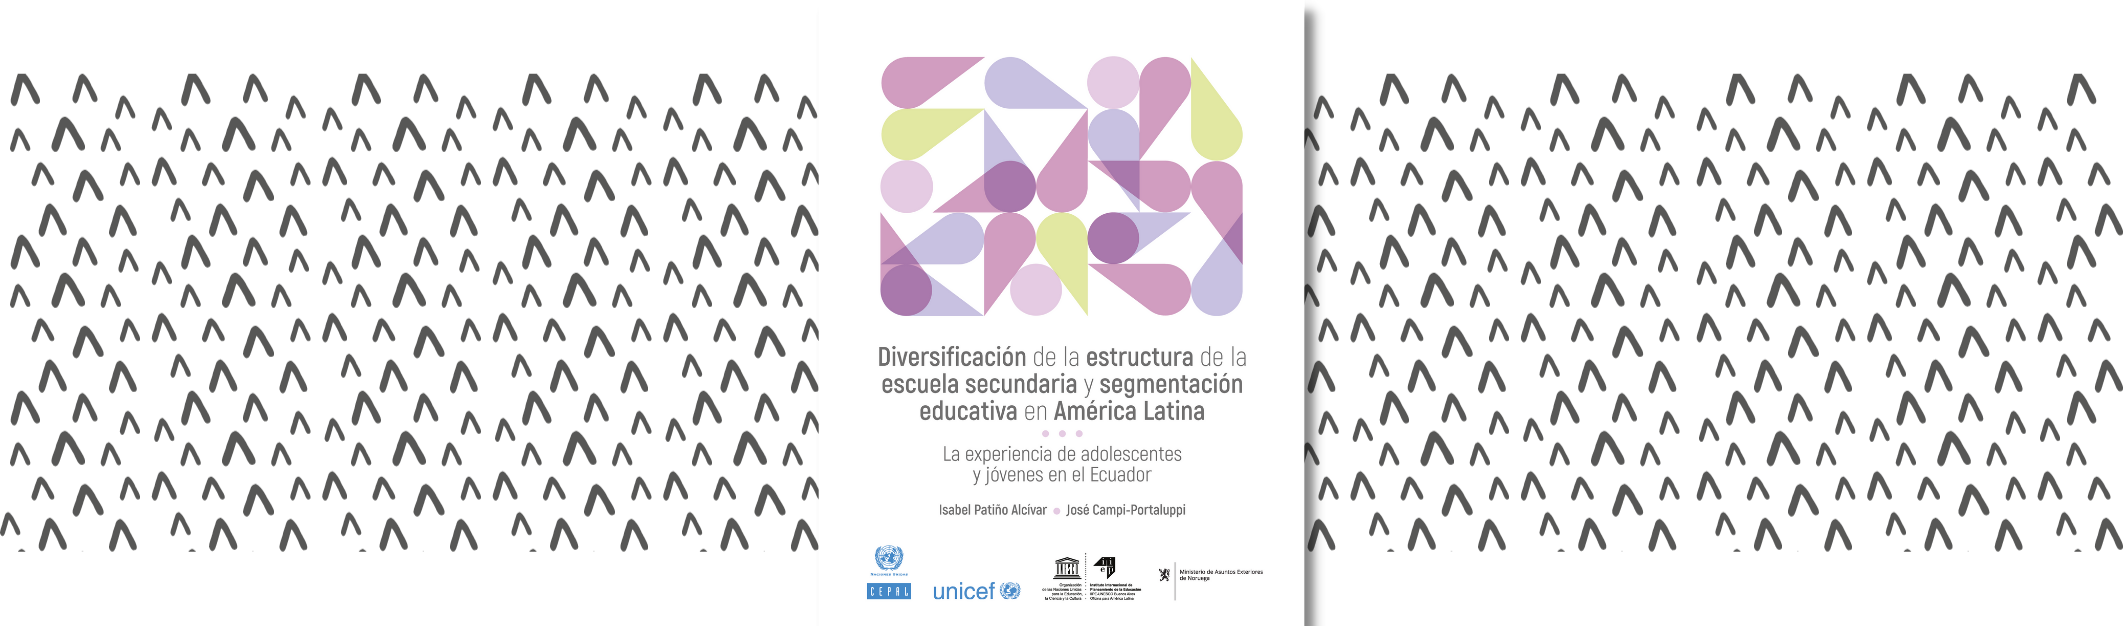 Diversificación de la estructura de la escuela secundaria y segmentación educativa en América Latina: la experiencia de adolescentes y jóvenes en el Ecuador